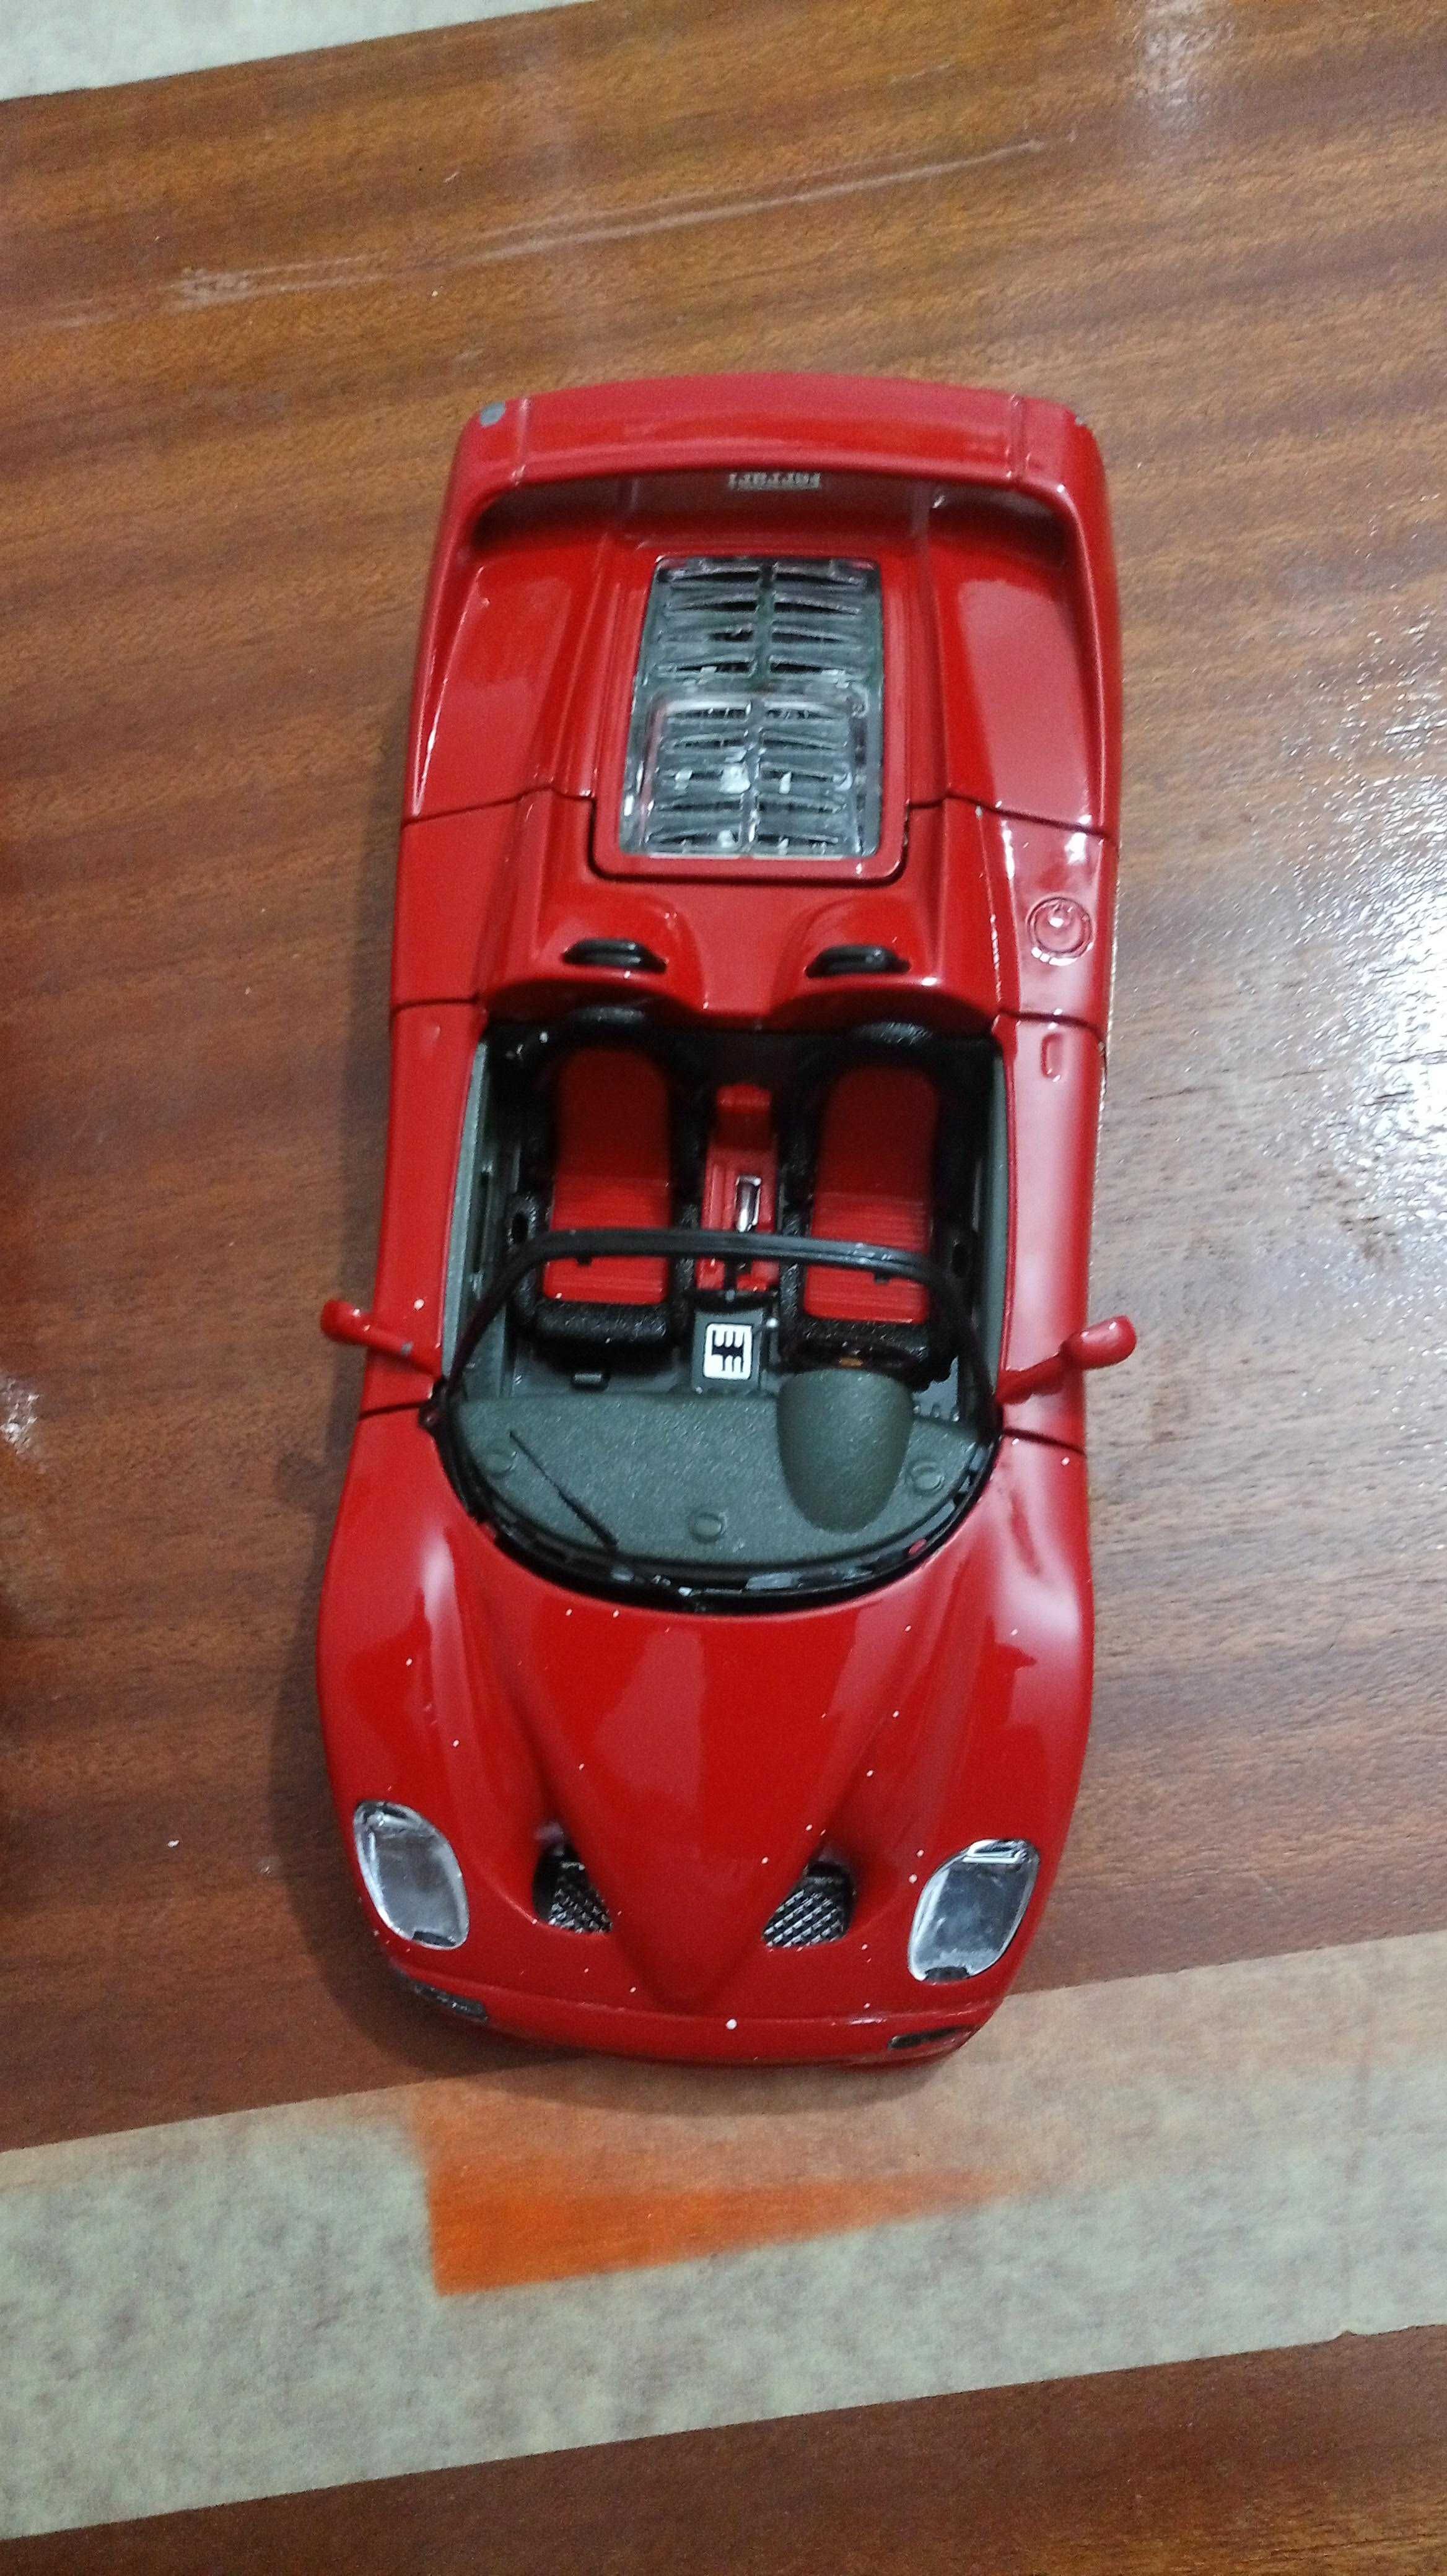 4 carros de colecção (3 Ferraris)